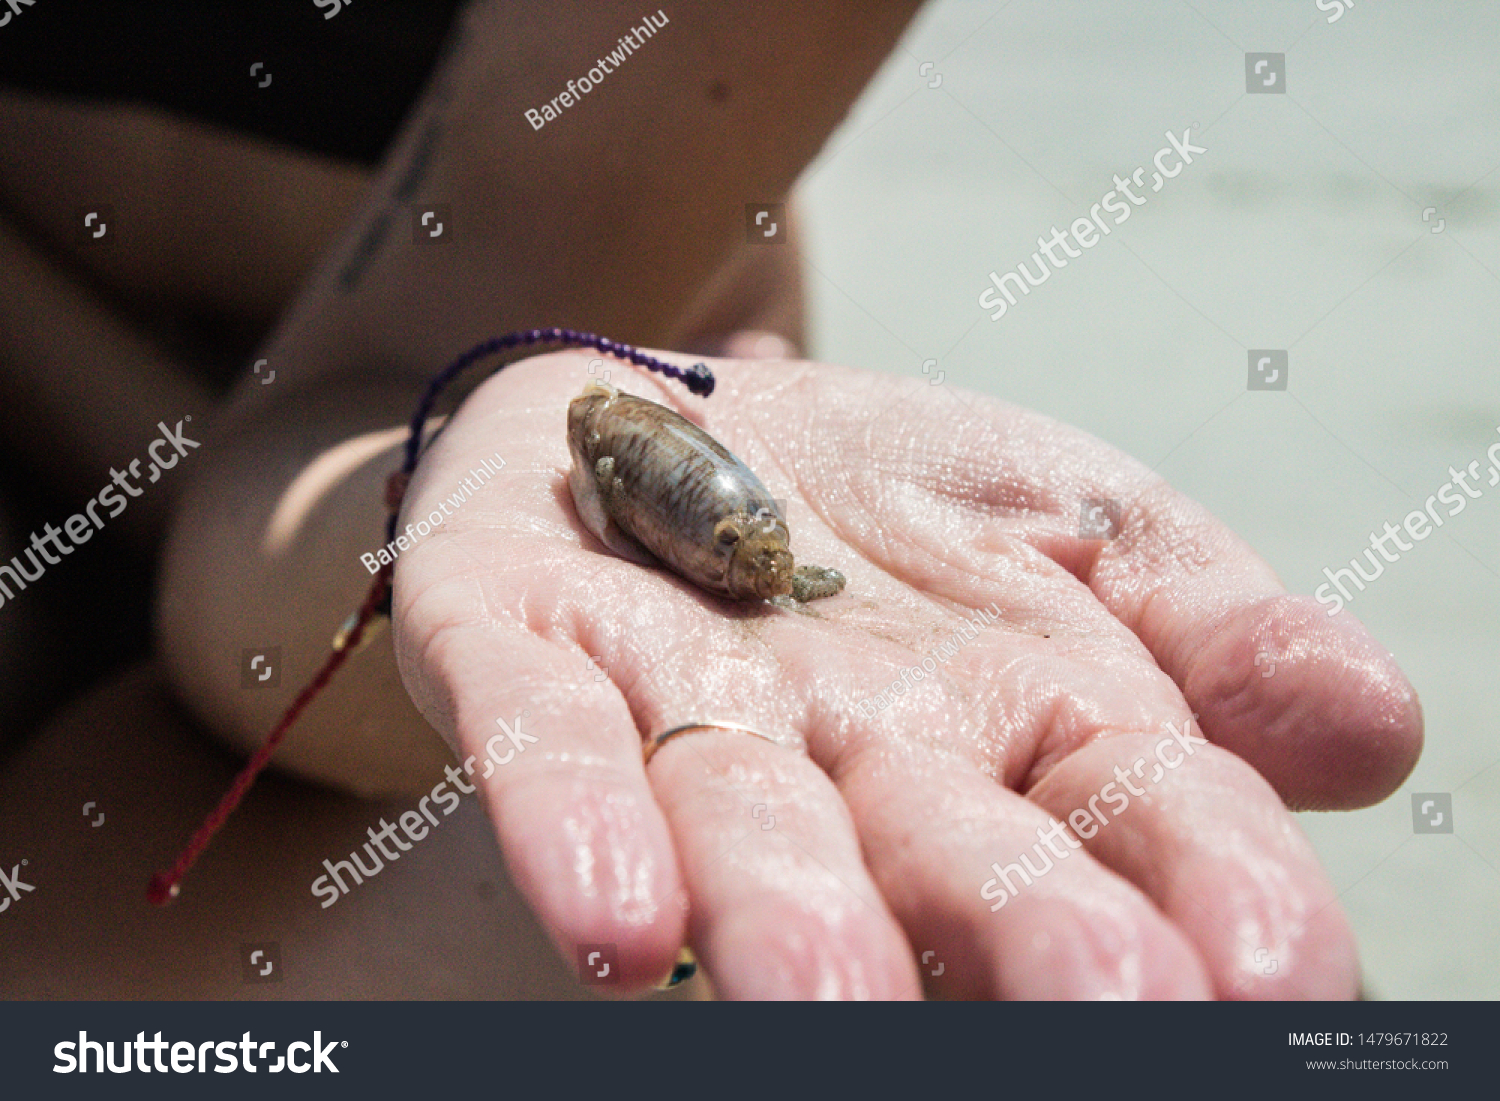 Becoming friends with a sea slug #1479671822